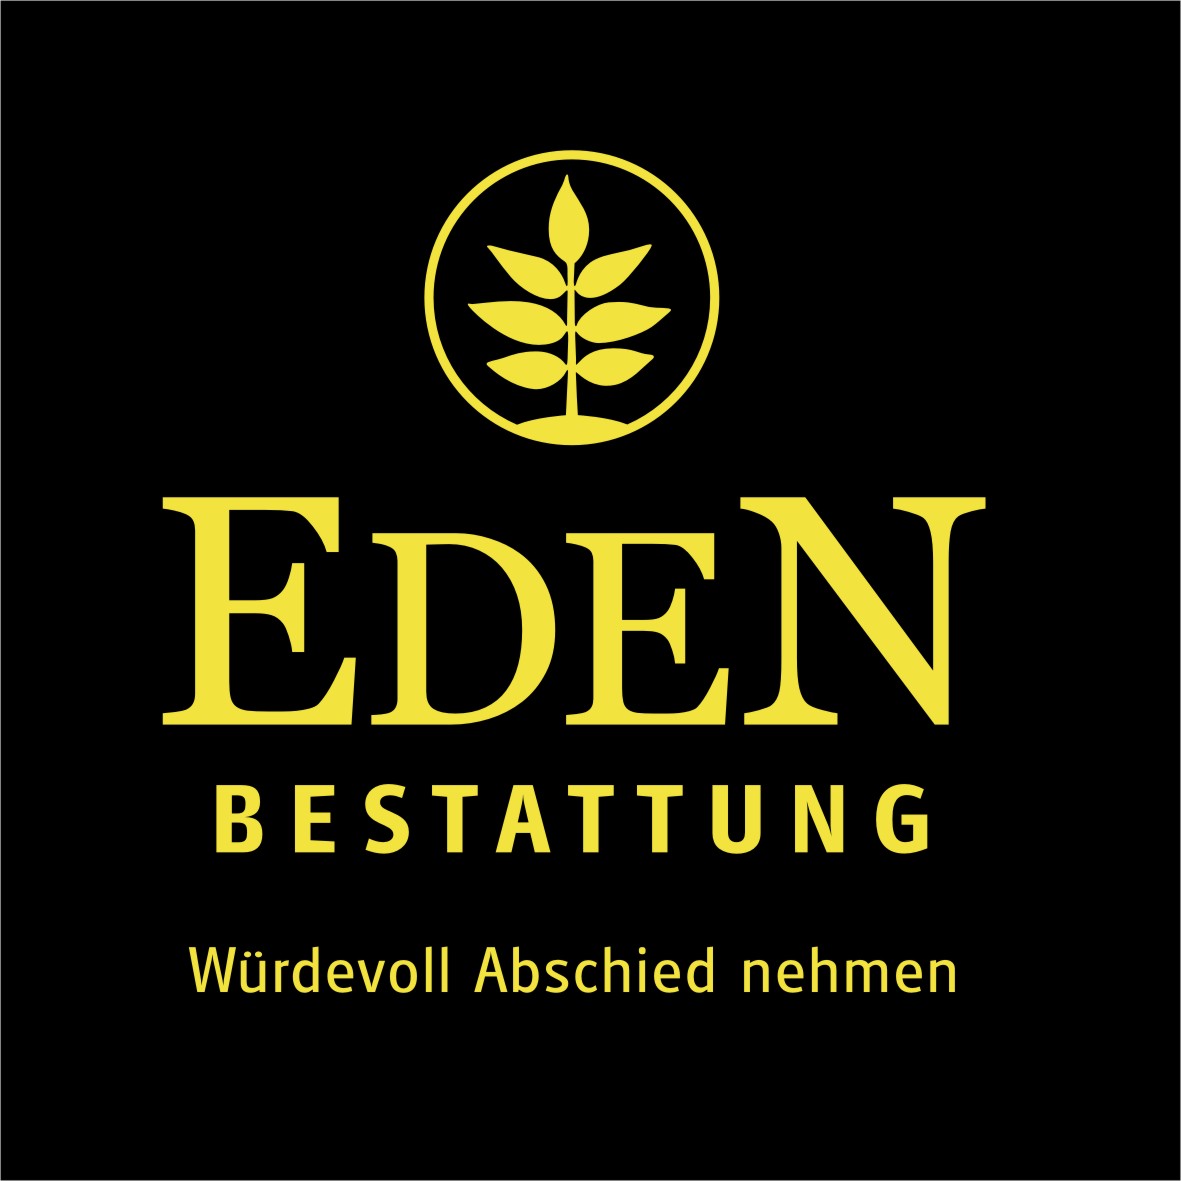 Bestattung Eden St. Margarethen Logo